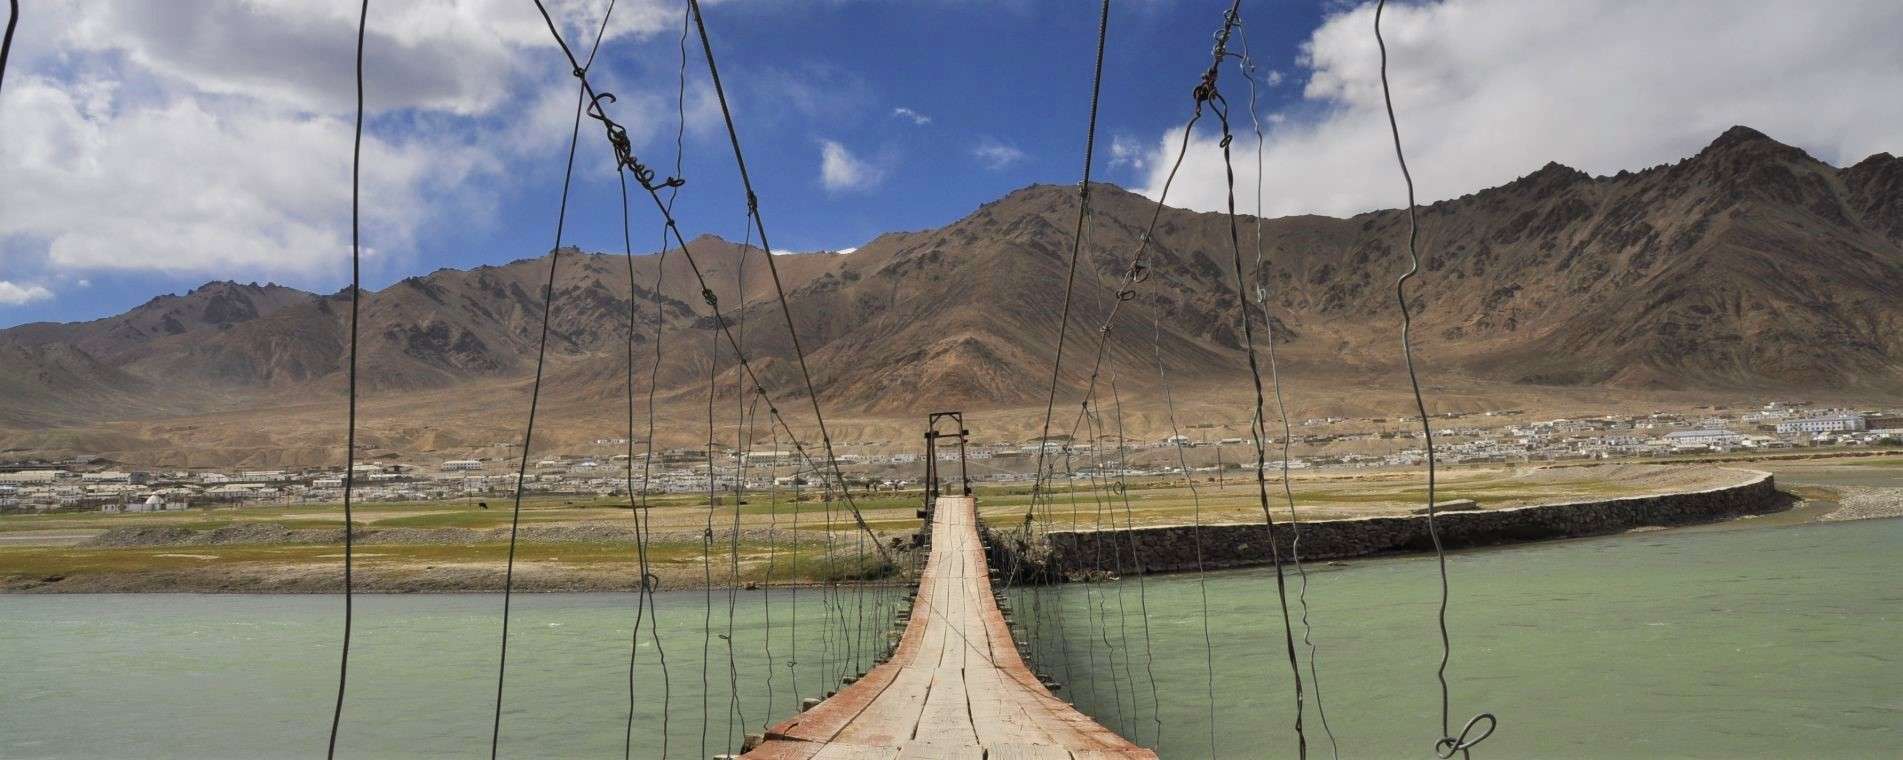 Tajikistan: The Pamir Highway (New Tour)